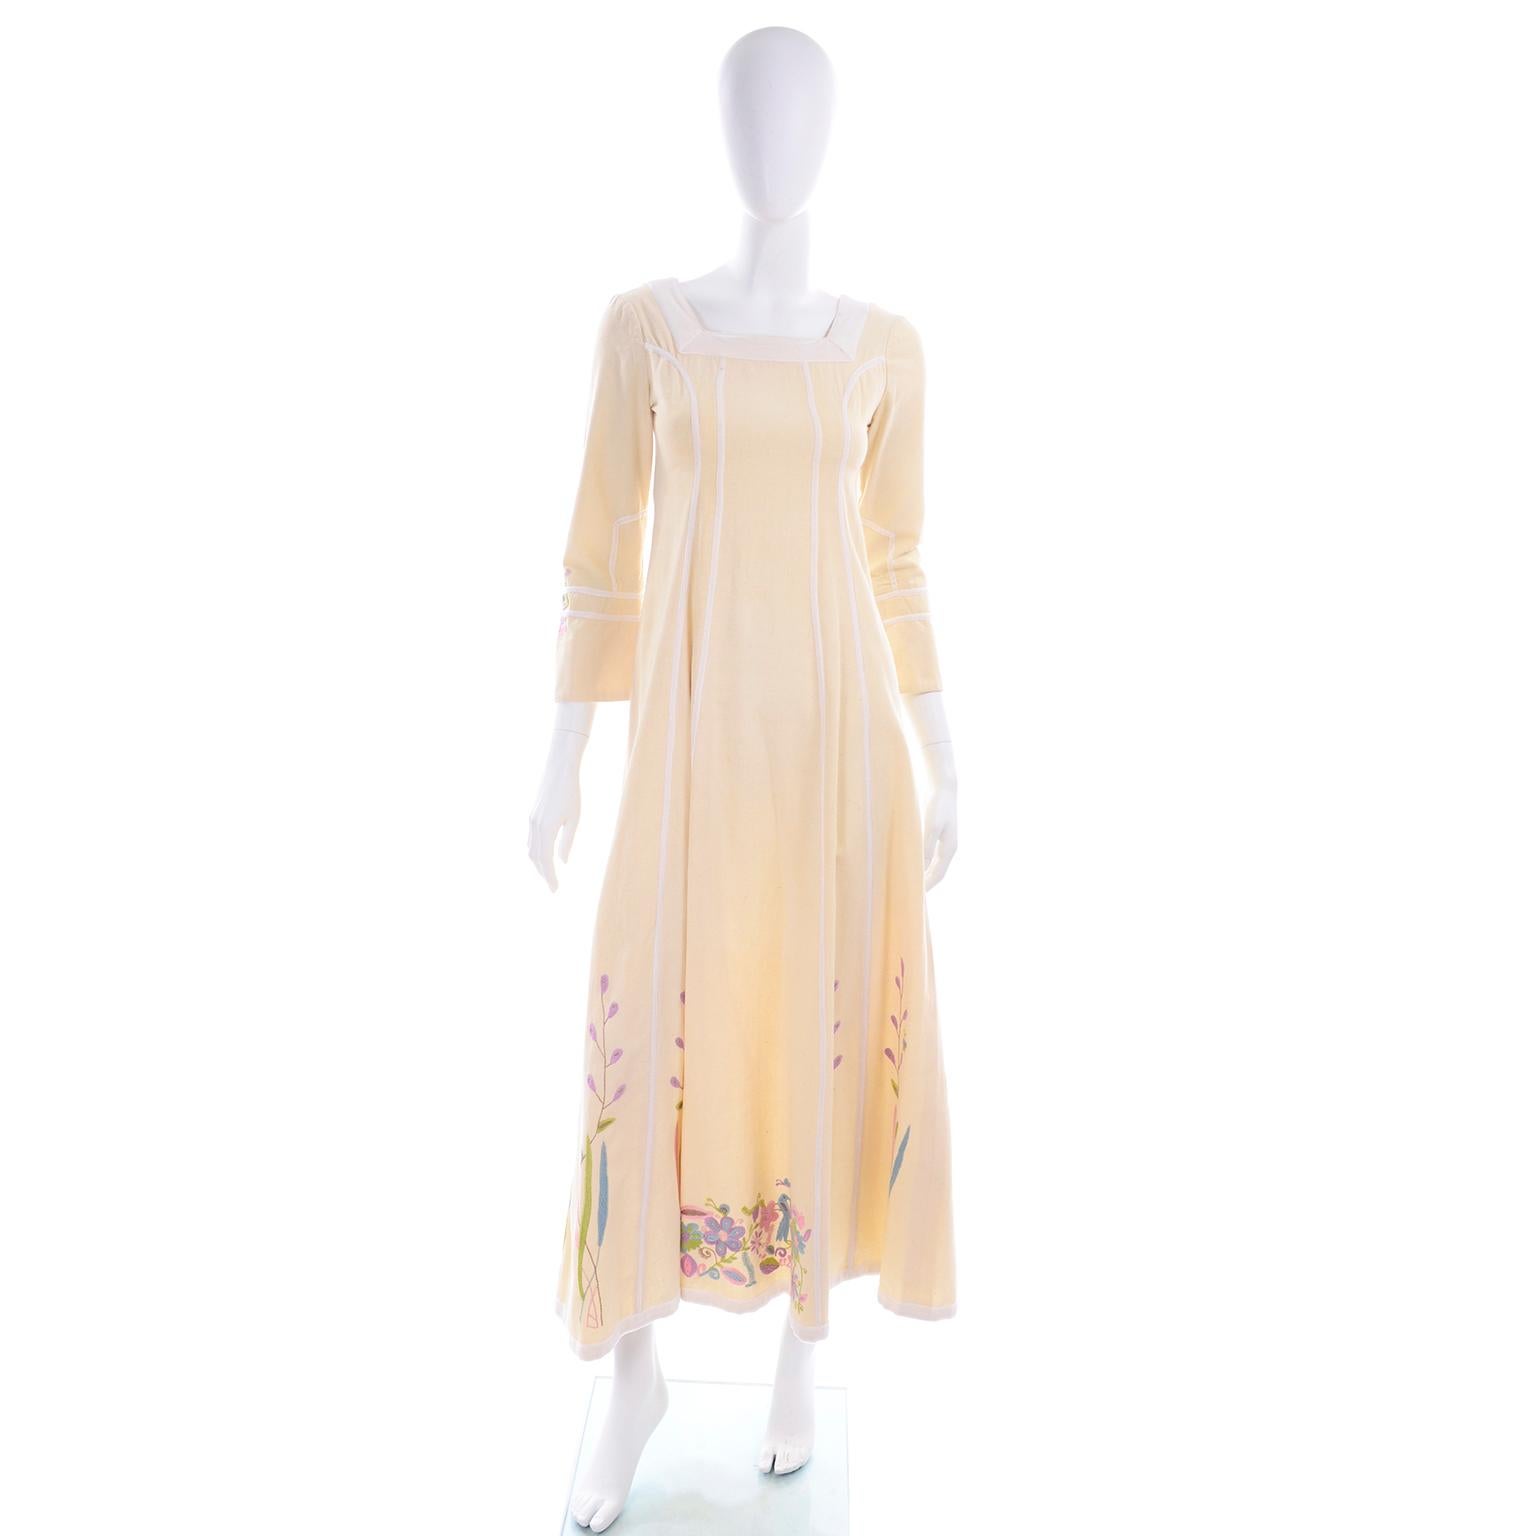 Dies ist ein cremefarbenes, schweres Baumwollkleid mit handgestickten Blumen und Vögeln in den Farben rosa, lila, blau, lindgrün und hellbraun. Dieses nicht etikettierte Josefa-Kleid hat eine mit weißem Samt eingenähte Bandverzierung entlang der